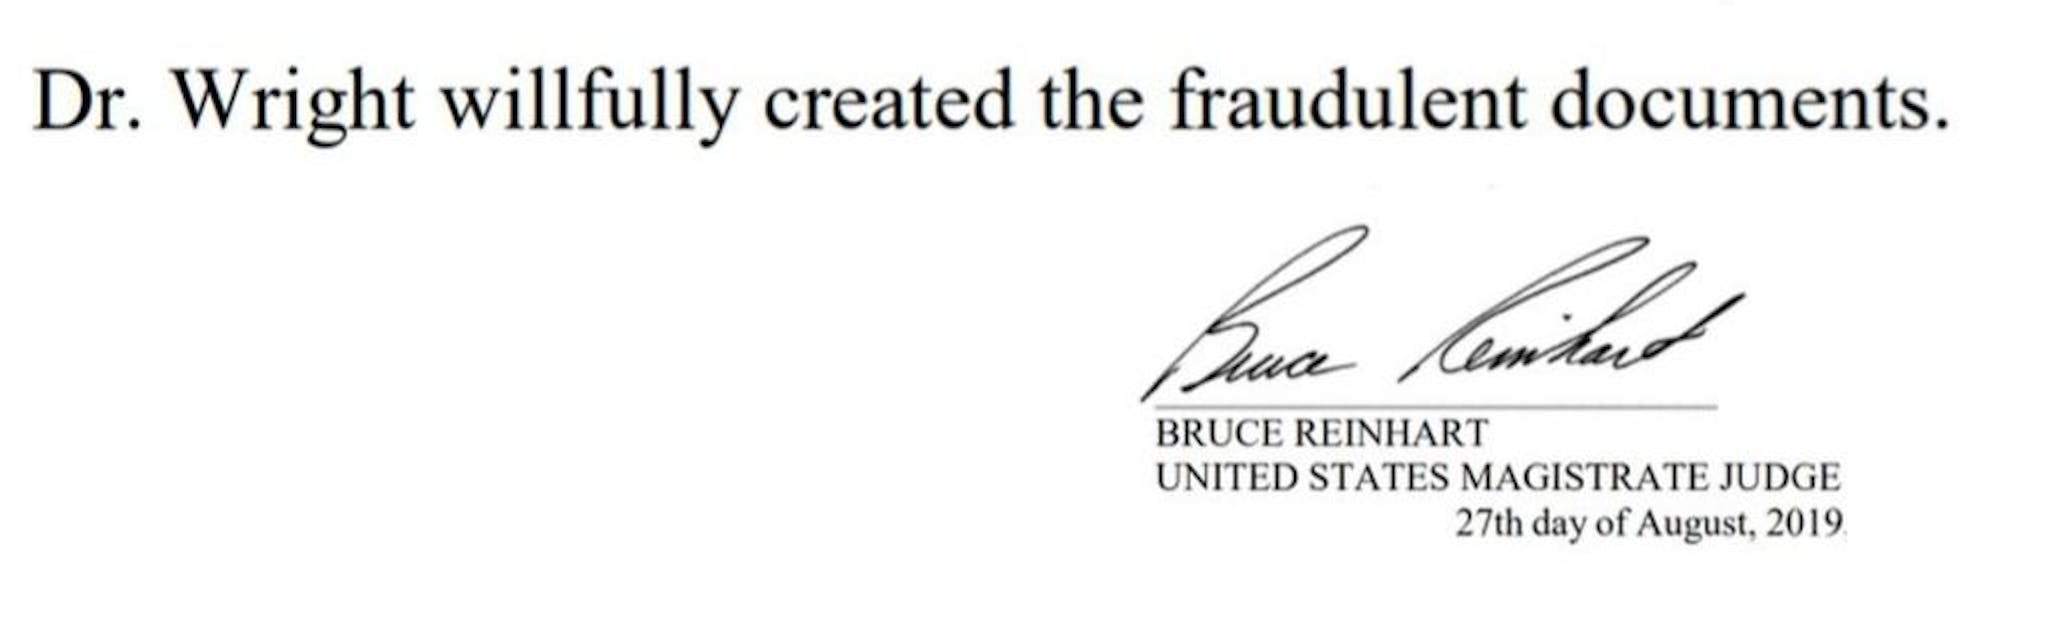 米国判事、クレイグ・ライト氏が詐欺文書を作成したと述べた